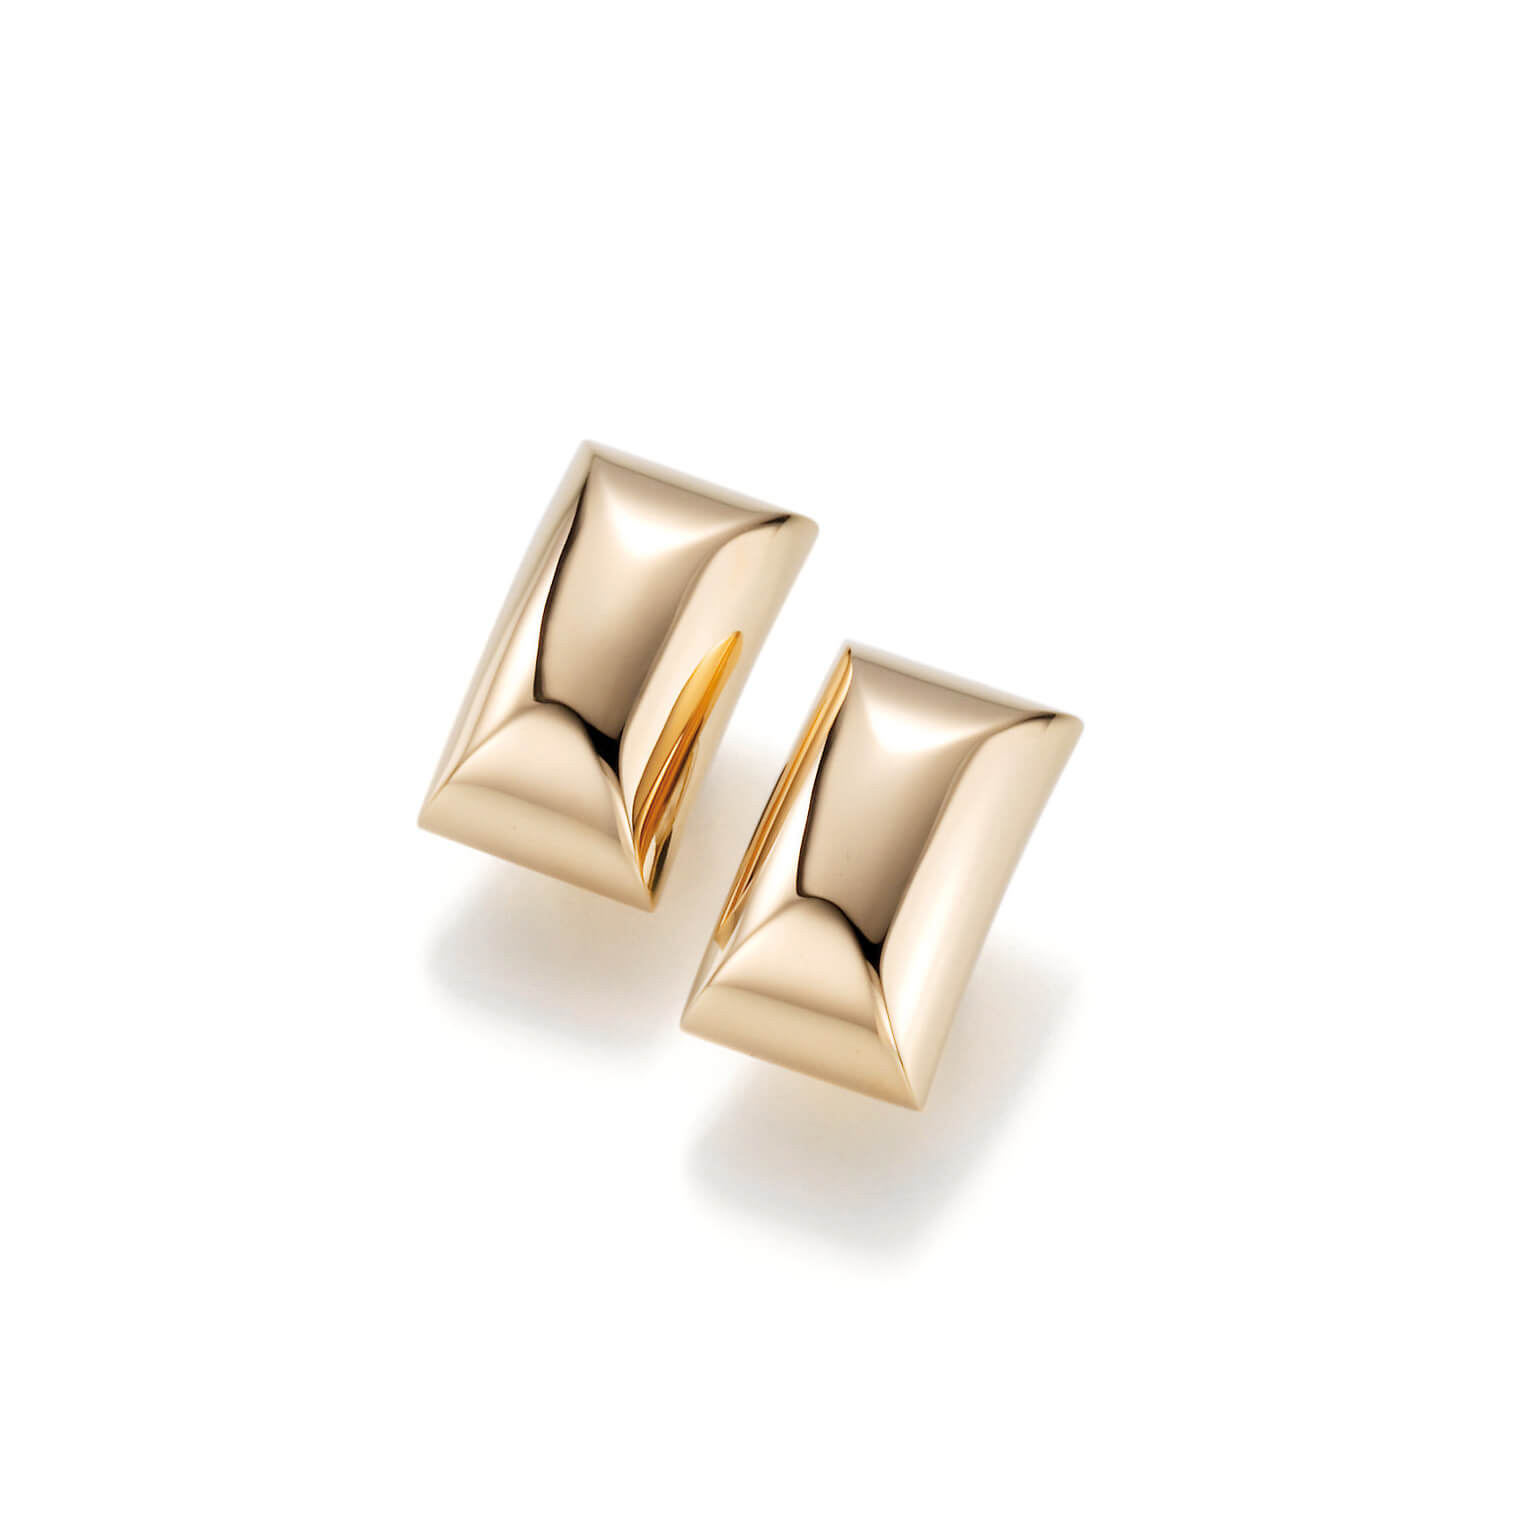 Grossist Du är på rätt plats för 925 silver OEM/ODM Jewelry anpassade guldpläterade örhängen